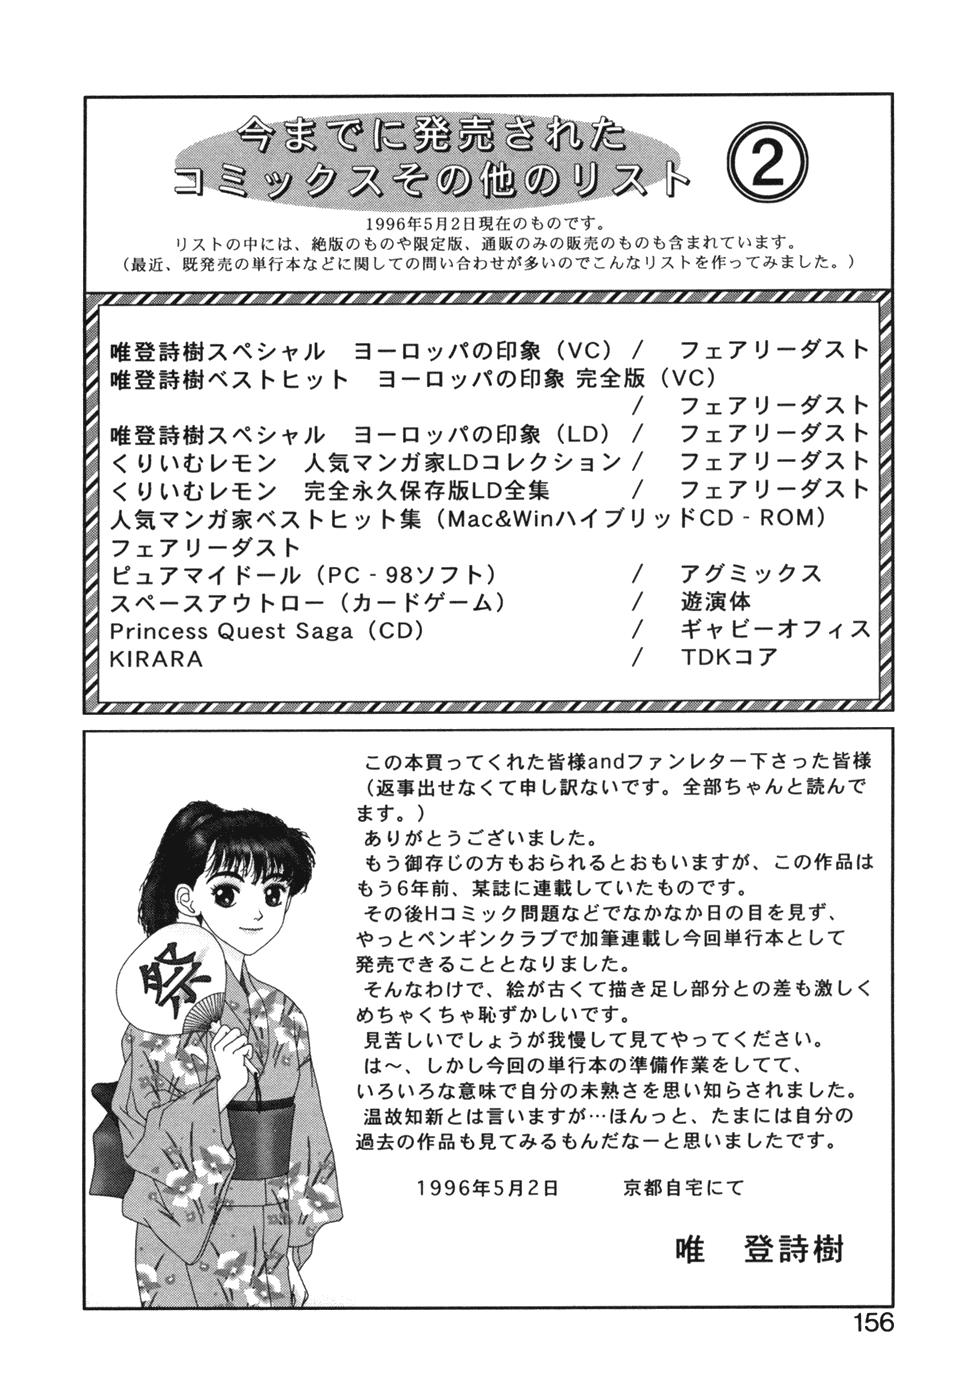 Ikenaiyo Yuukosan Vol2 156